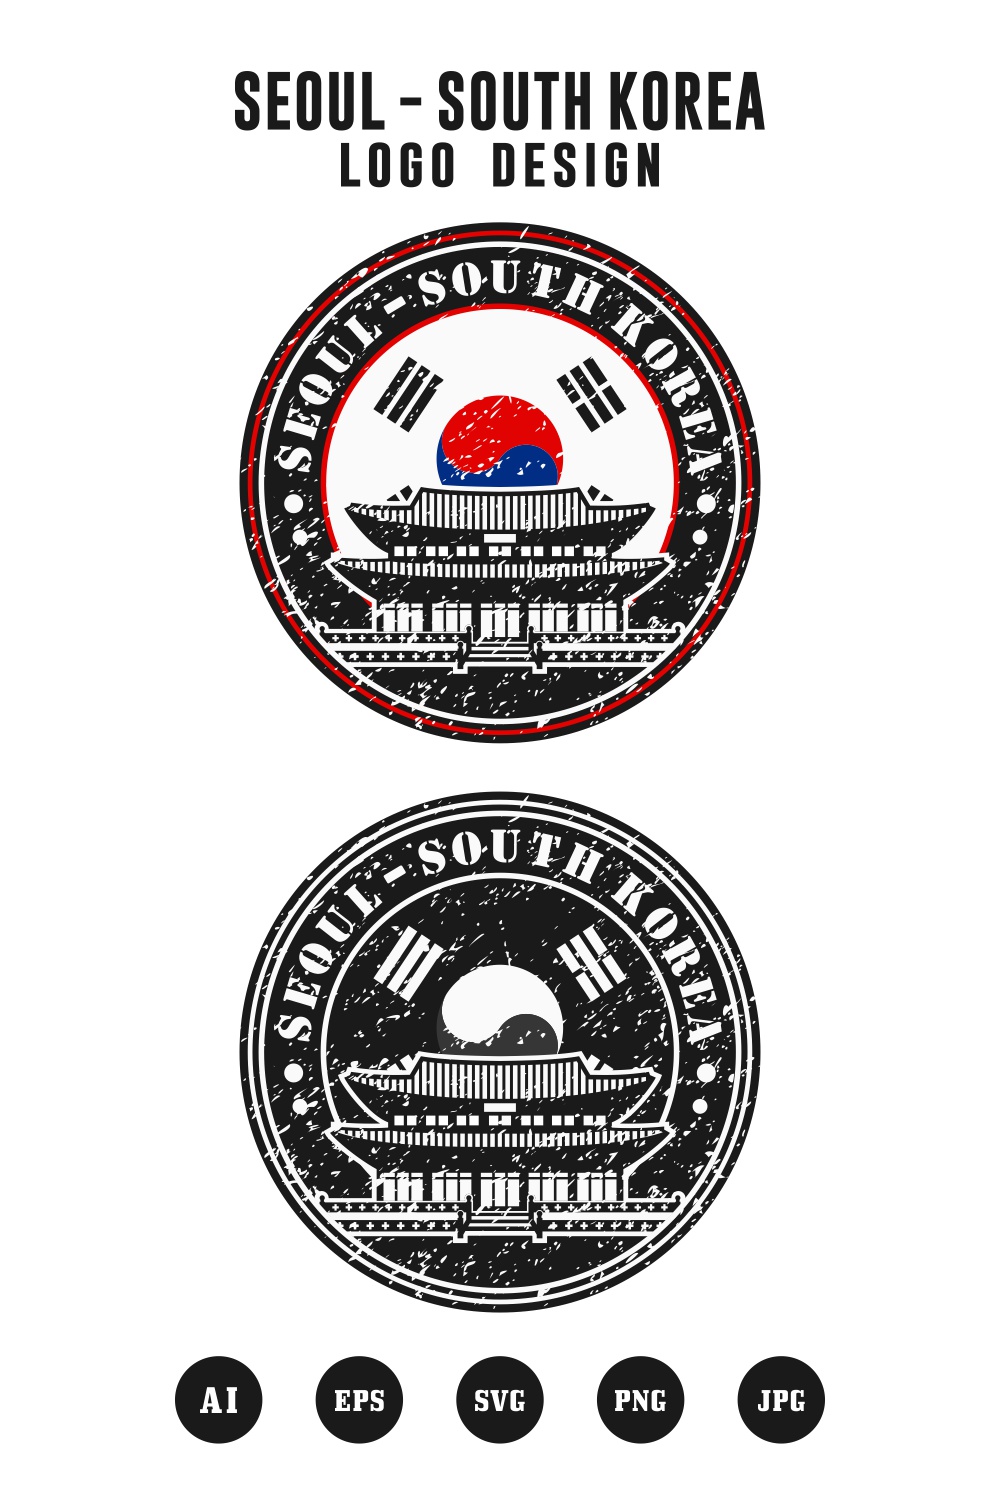 Seoul south korea vector logo design collection - $4 pinterest preview image.